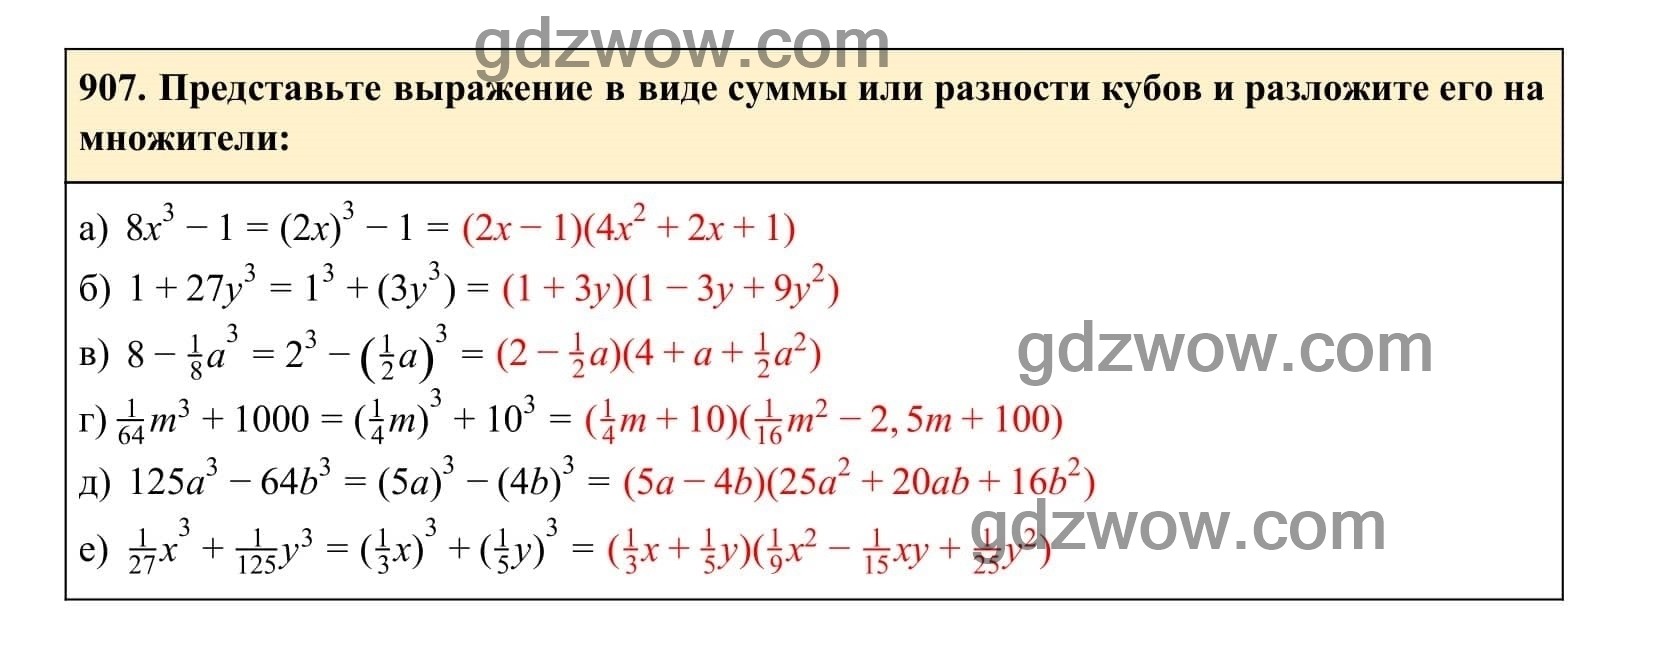 Упражнение 907 - ГДЗ по Алгебре 7 класс Учебник Макарычев (решебник) - GDZwow